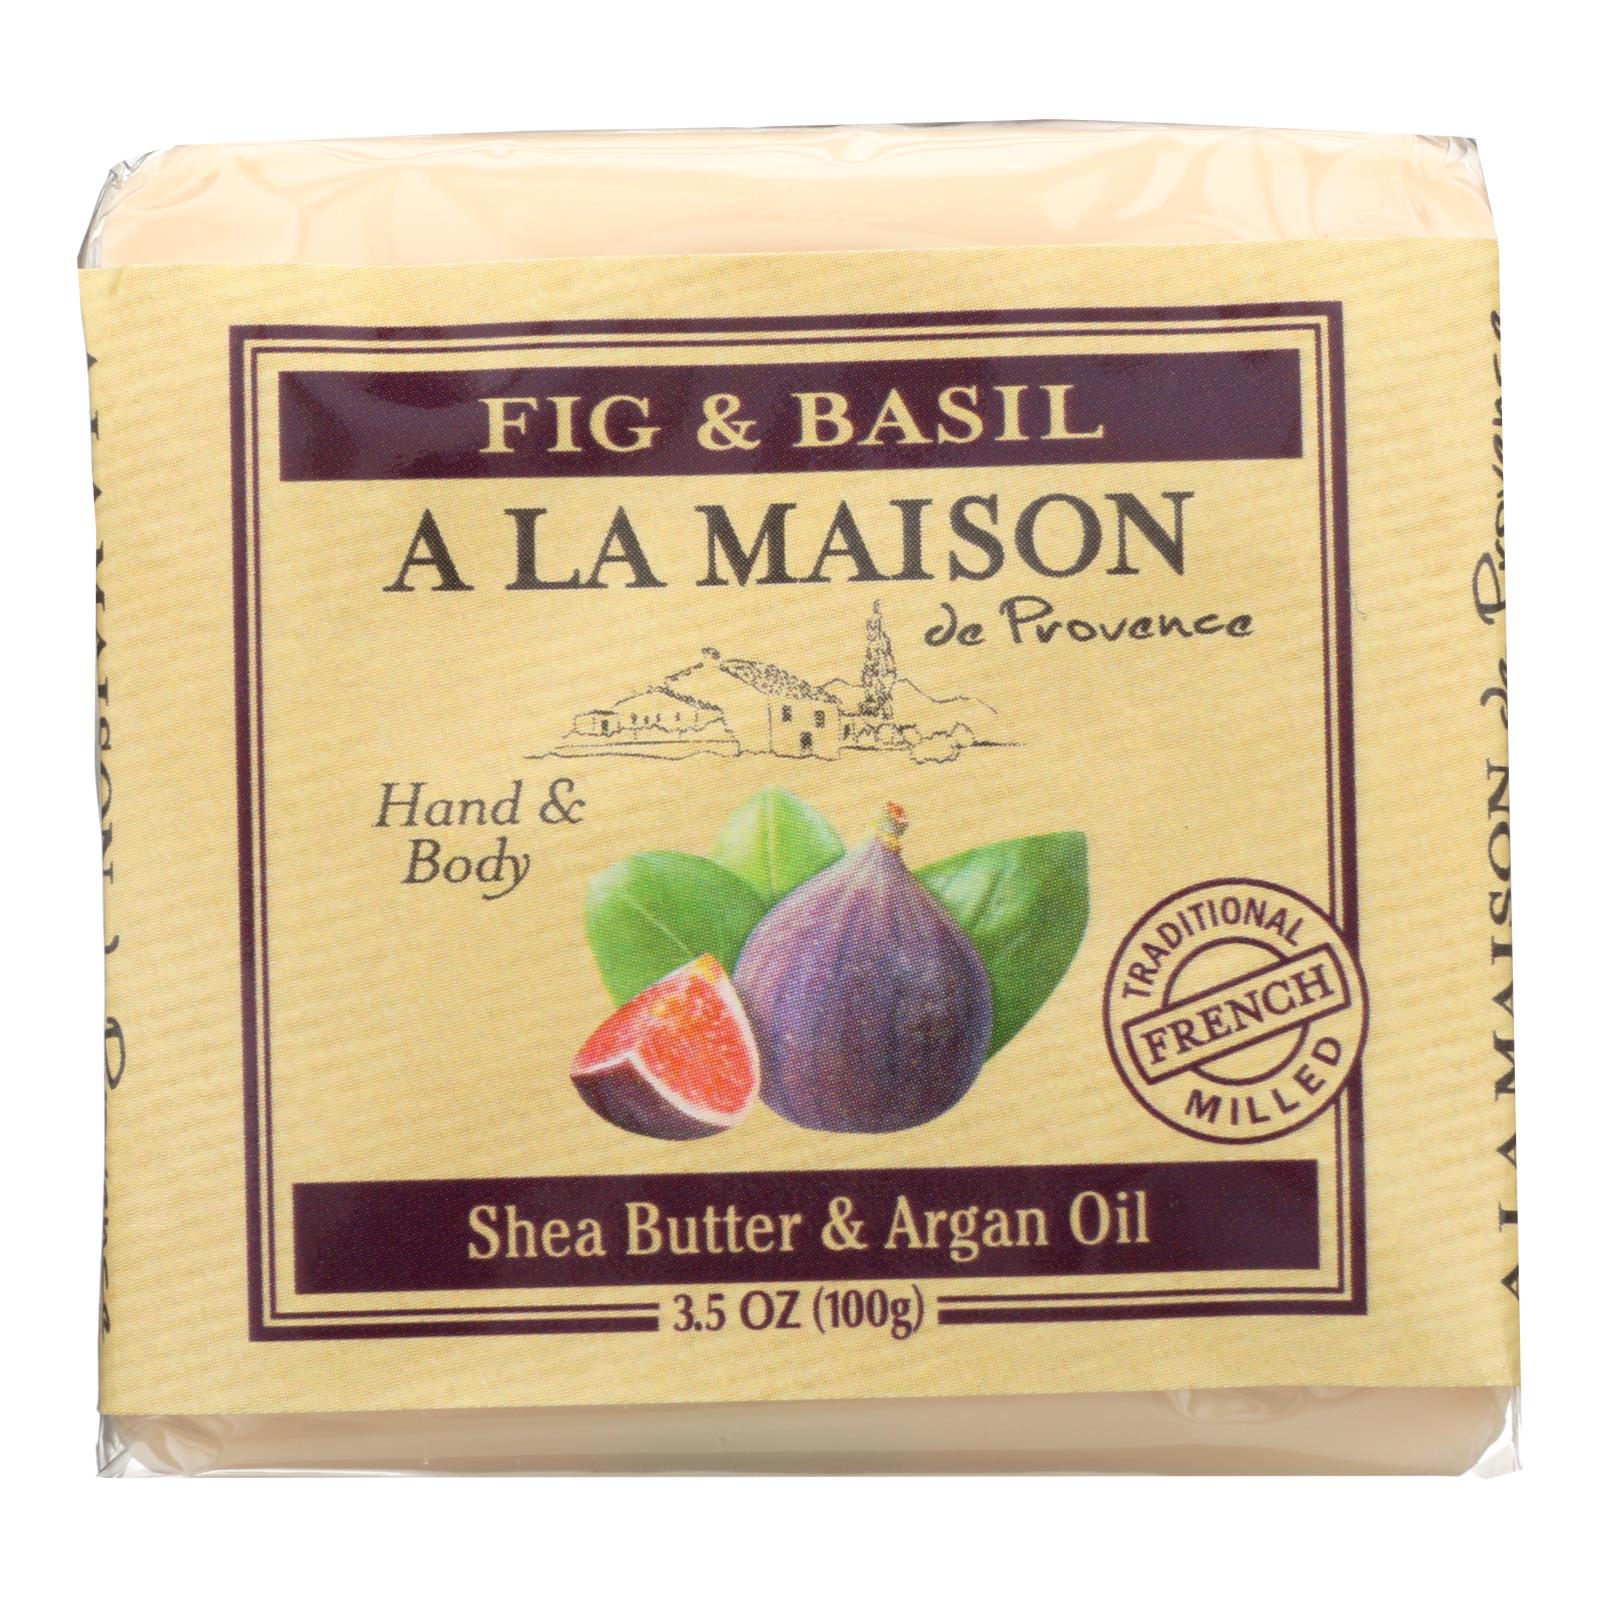 A La Maison - Bar Soap - Fig And Basil - Case Of 6 - 3.5 Oz